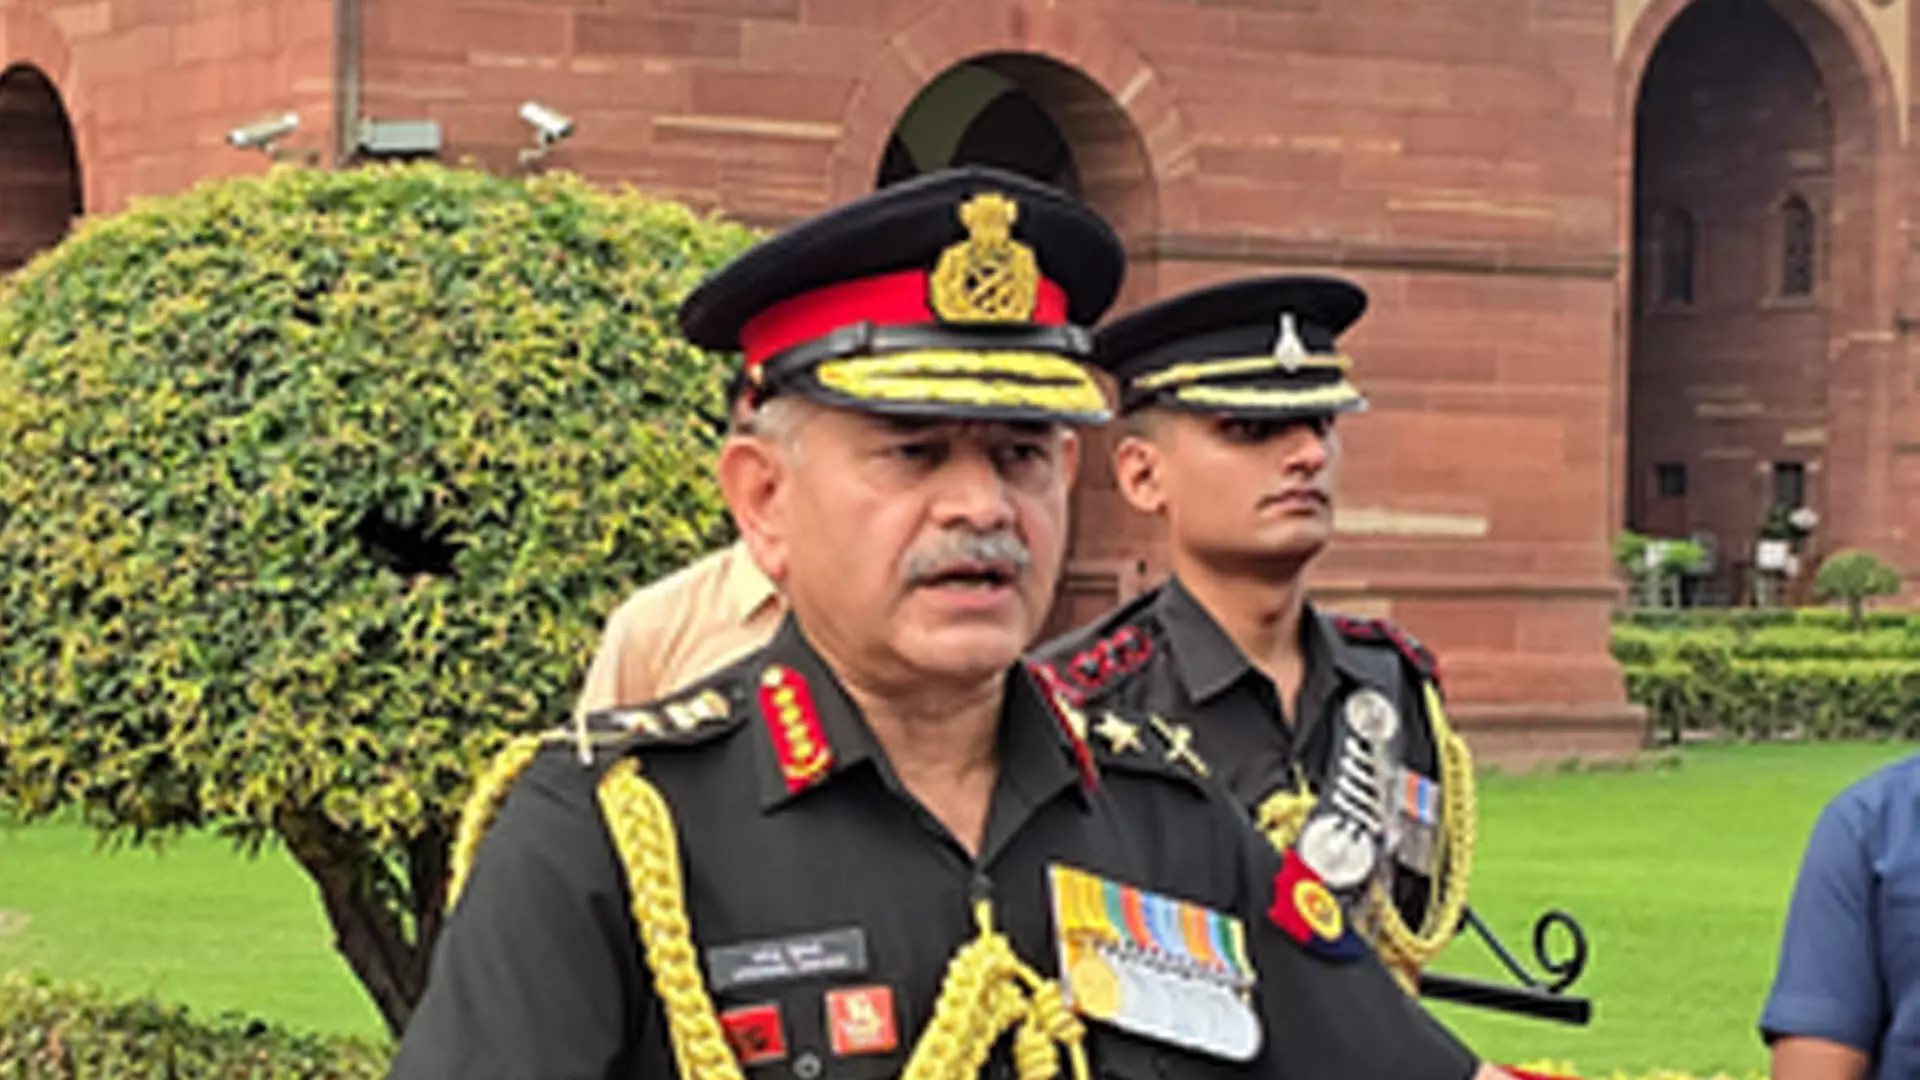 Delhi News: सेना सभी चुनौतियों का सामना करने के लिए पूरी तरह सक्षम और तैयार जनरल द्विवेदी